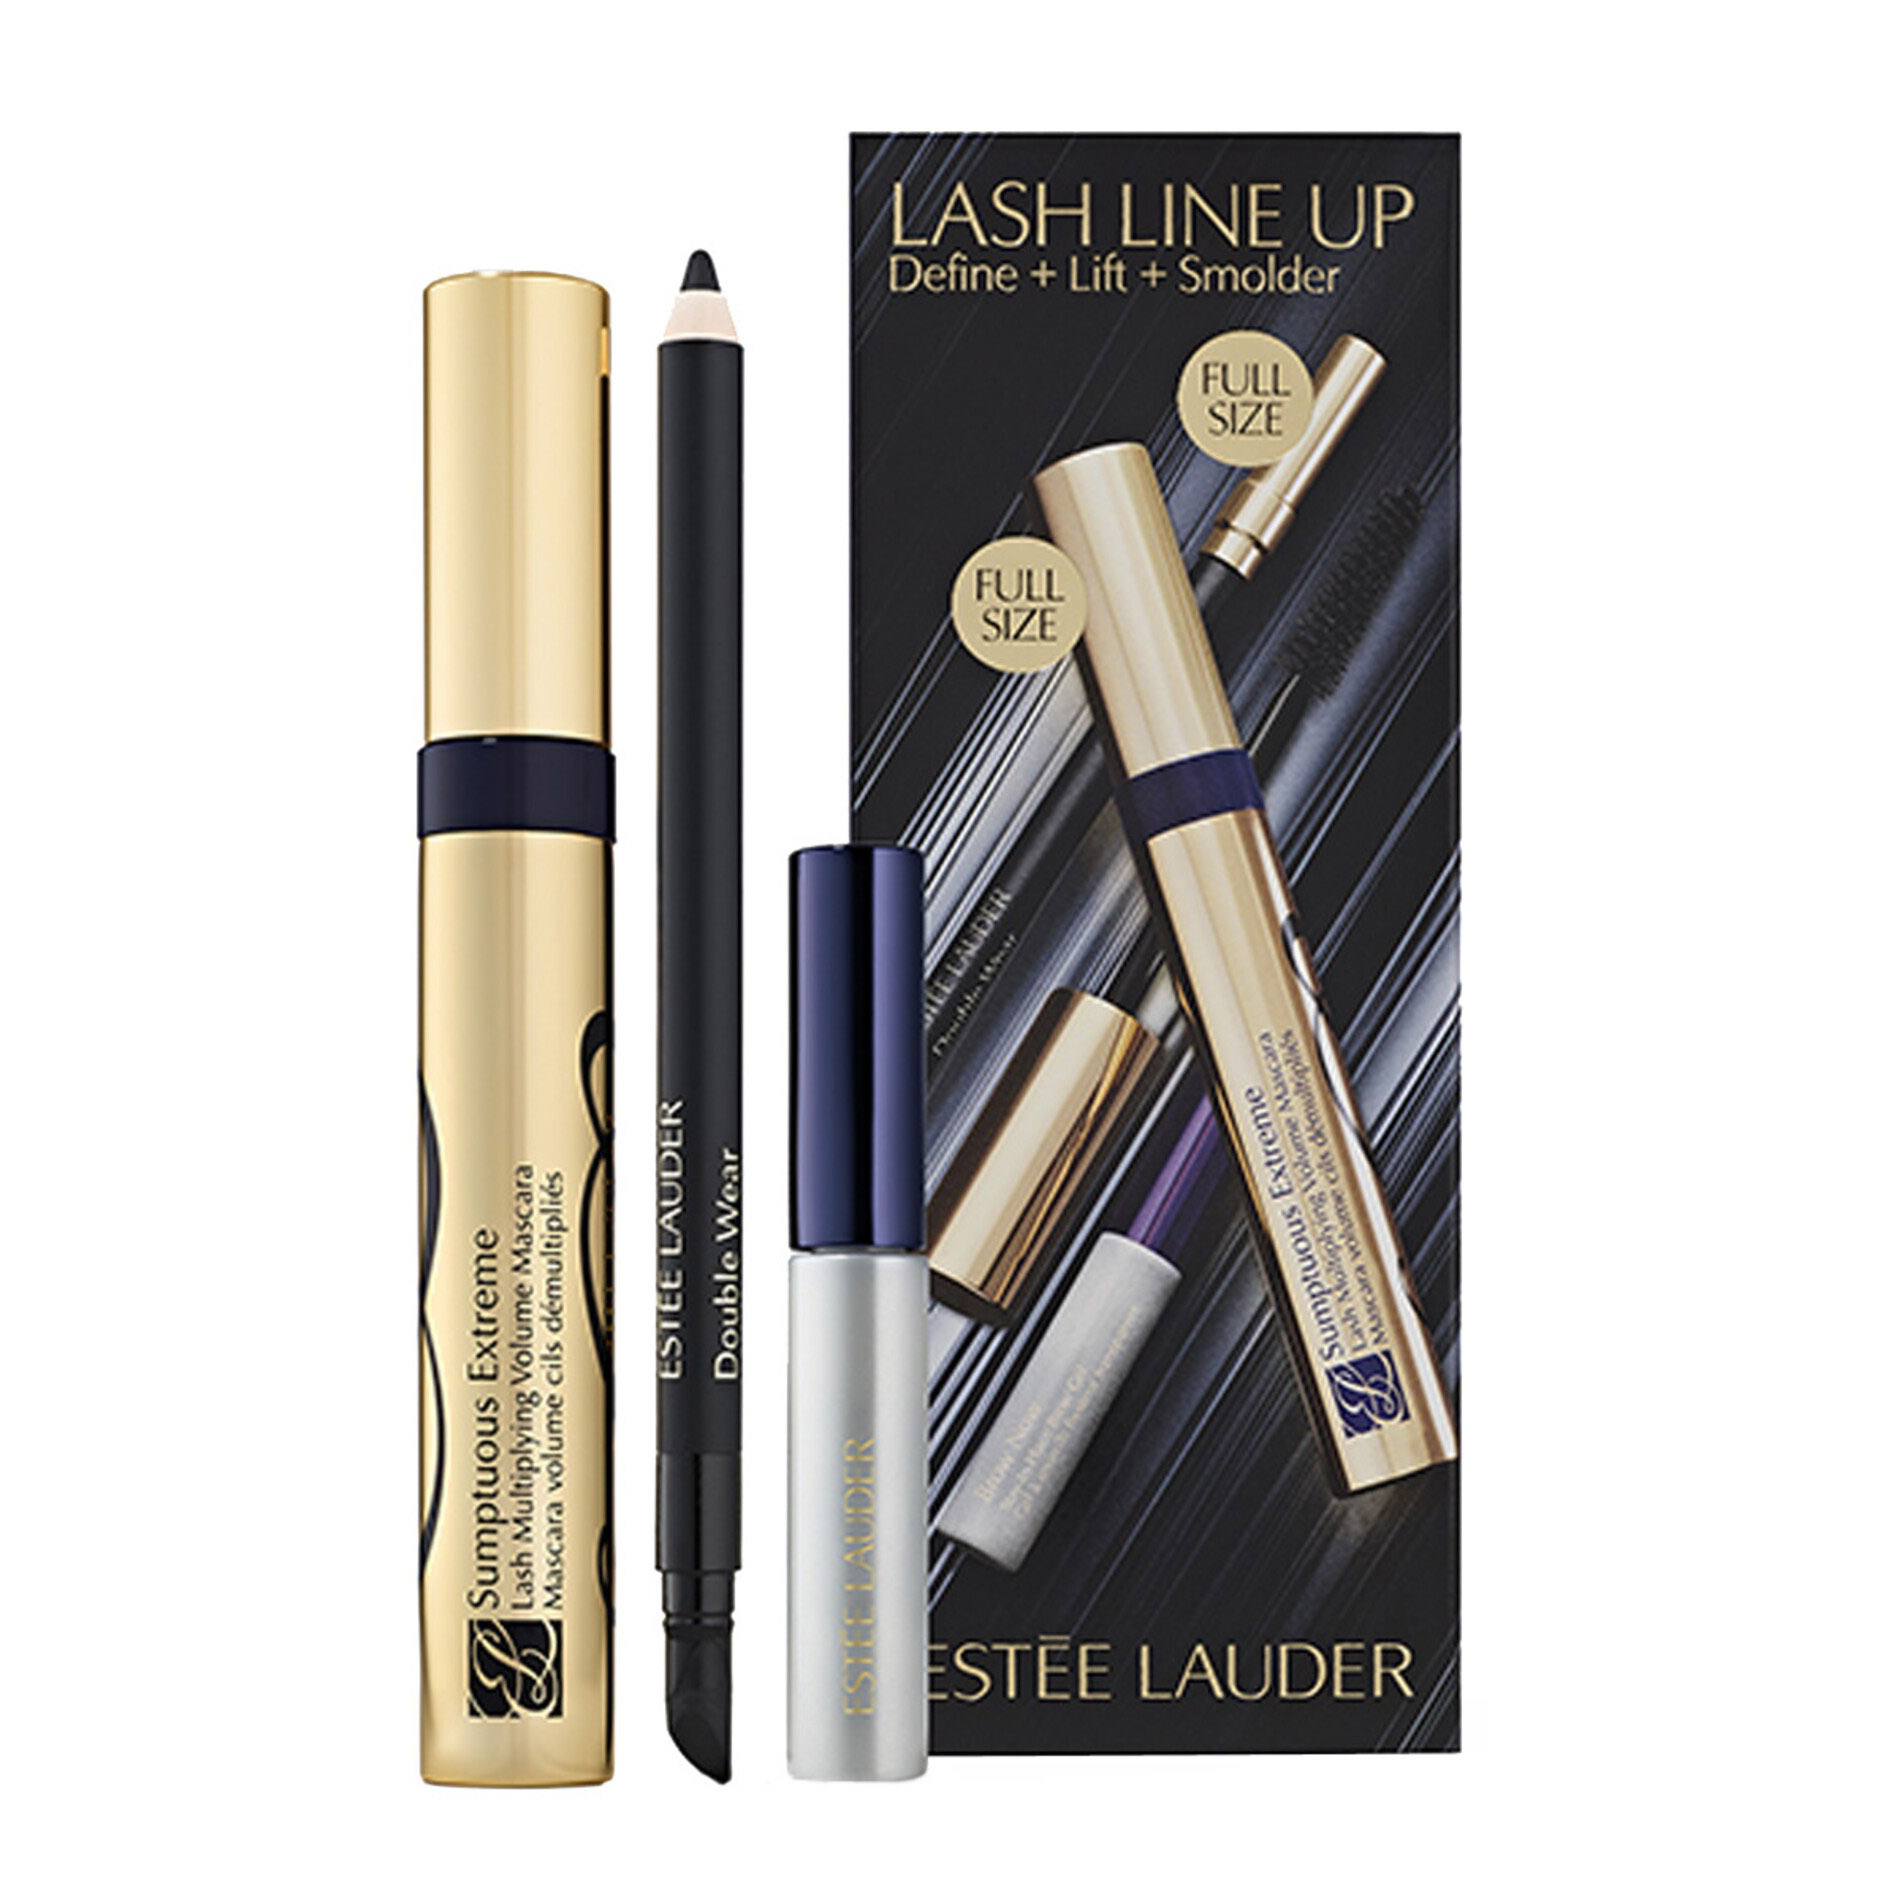 Подарочный набор Estee Lauder Lash Line Up Sumptuous Extreme Mascara Define, 3 предмета